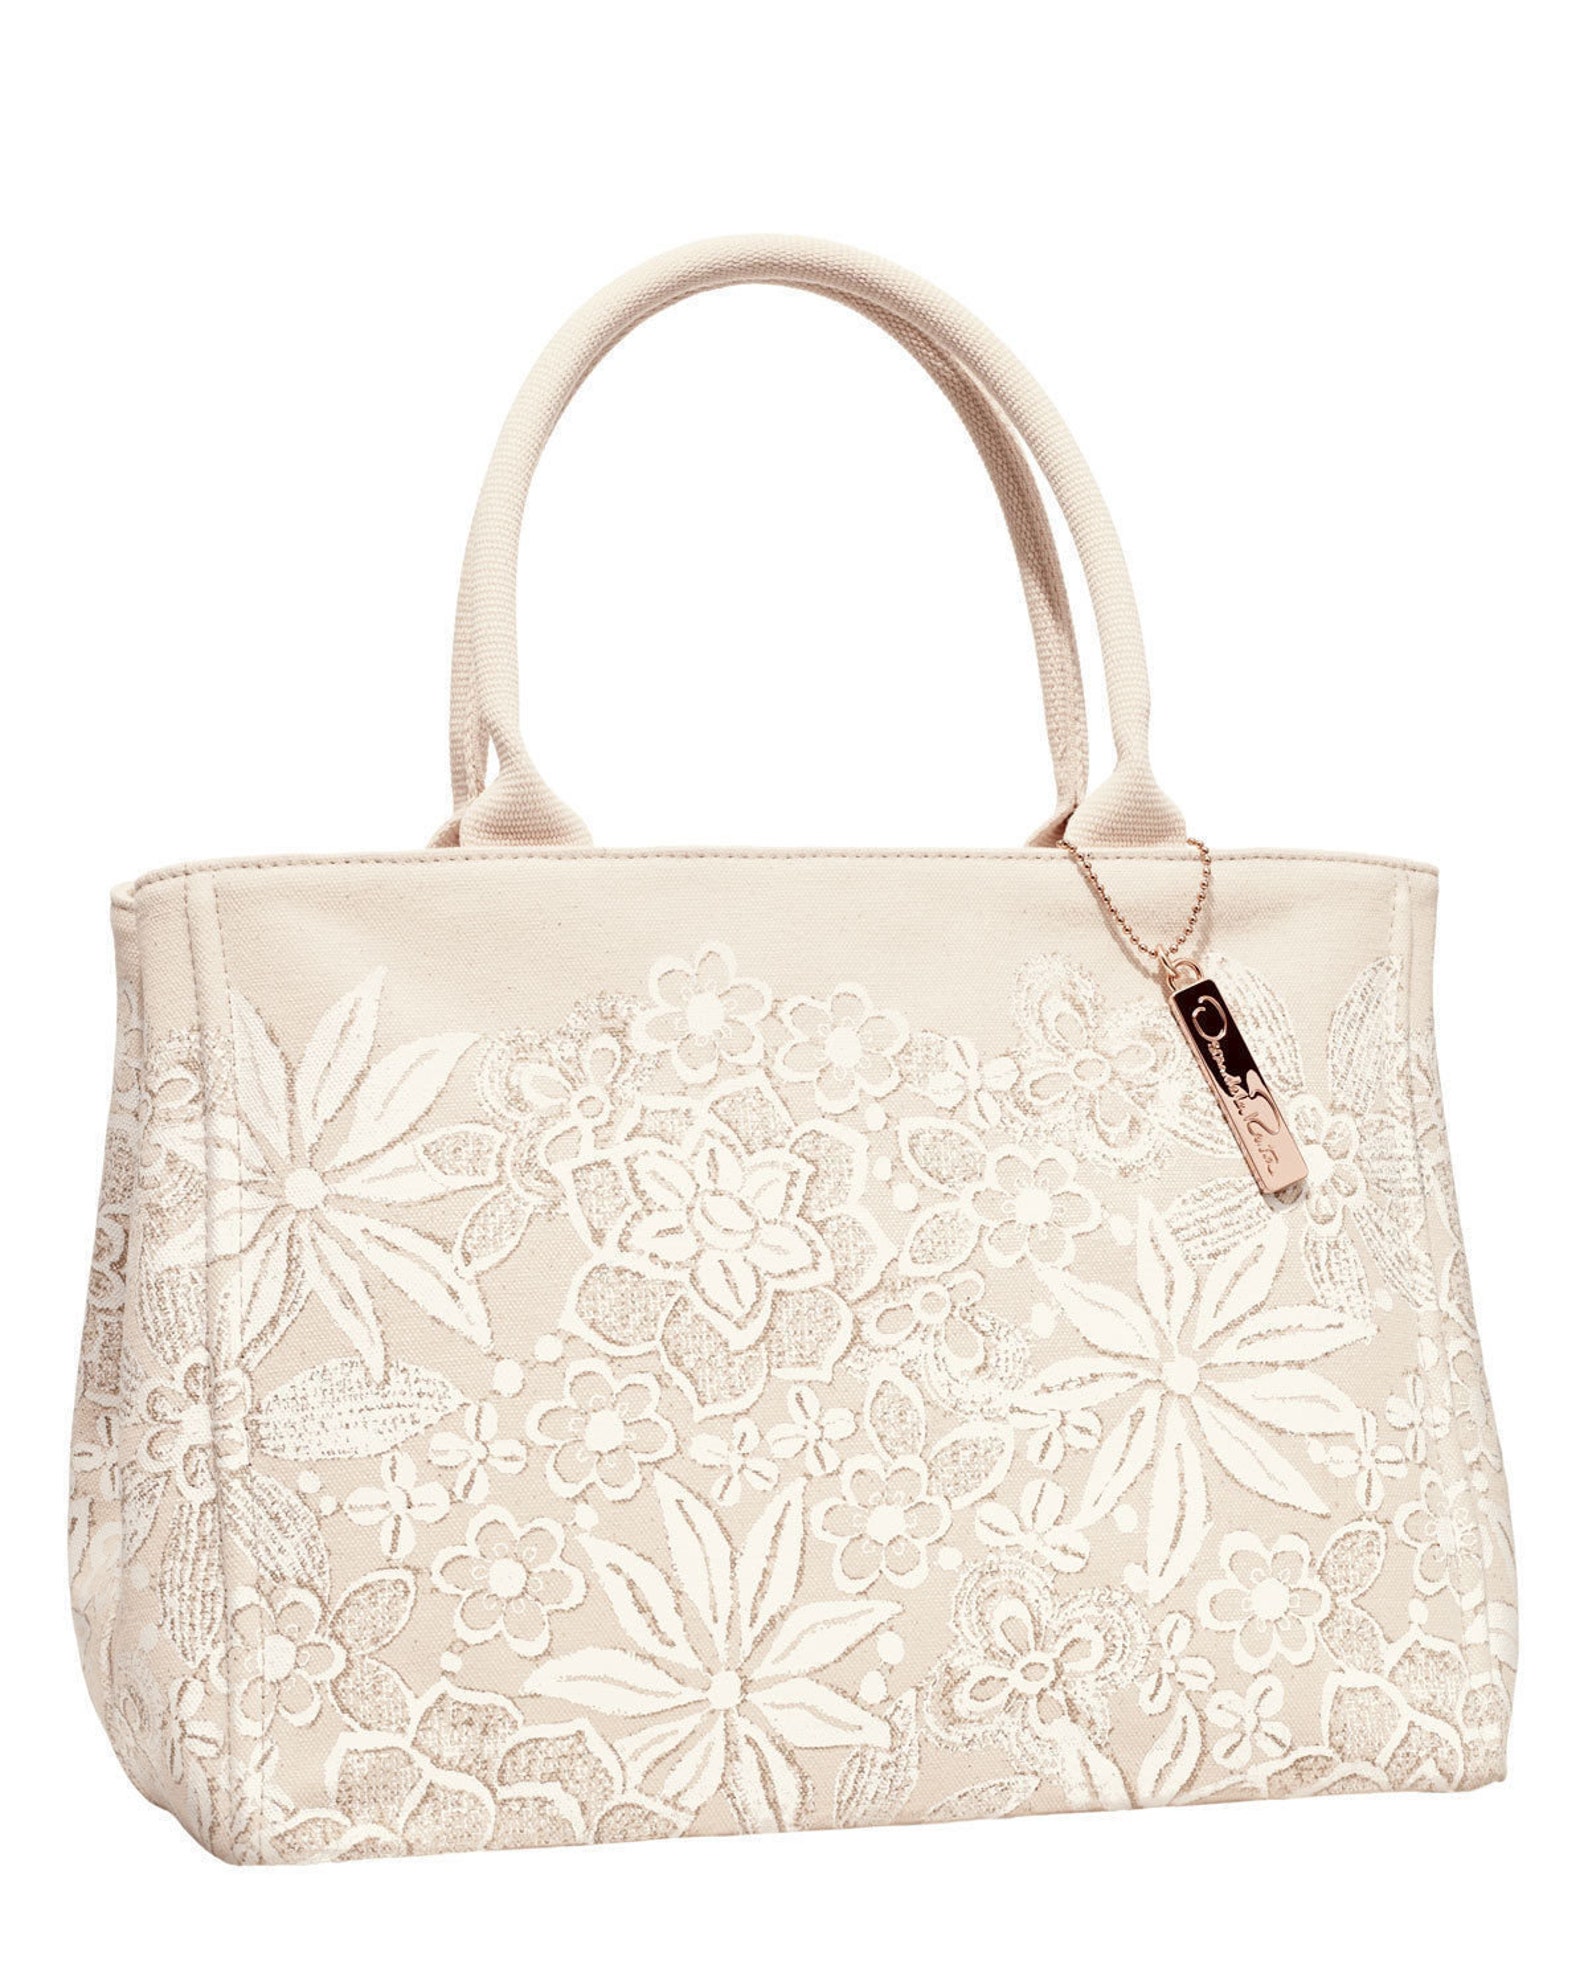 Oscar de La Renta Floral Lace Canvas Handbag | Etsy